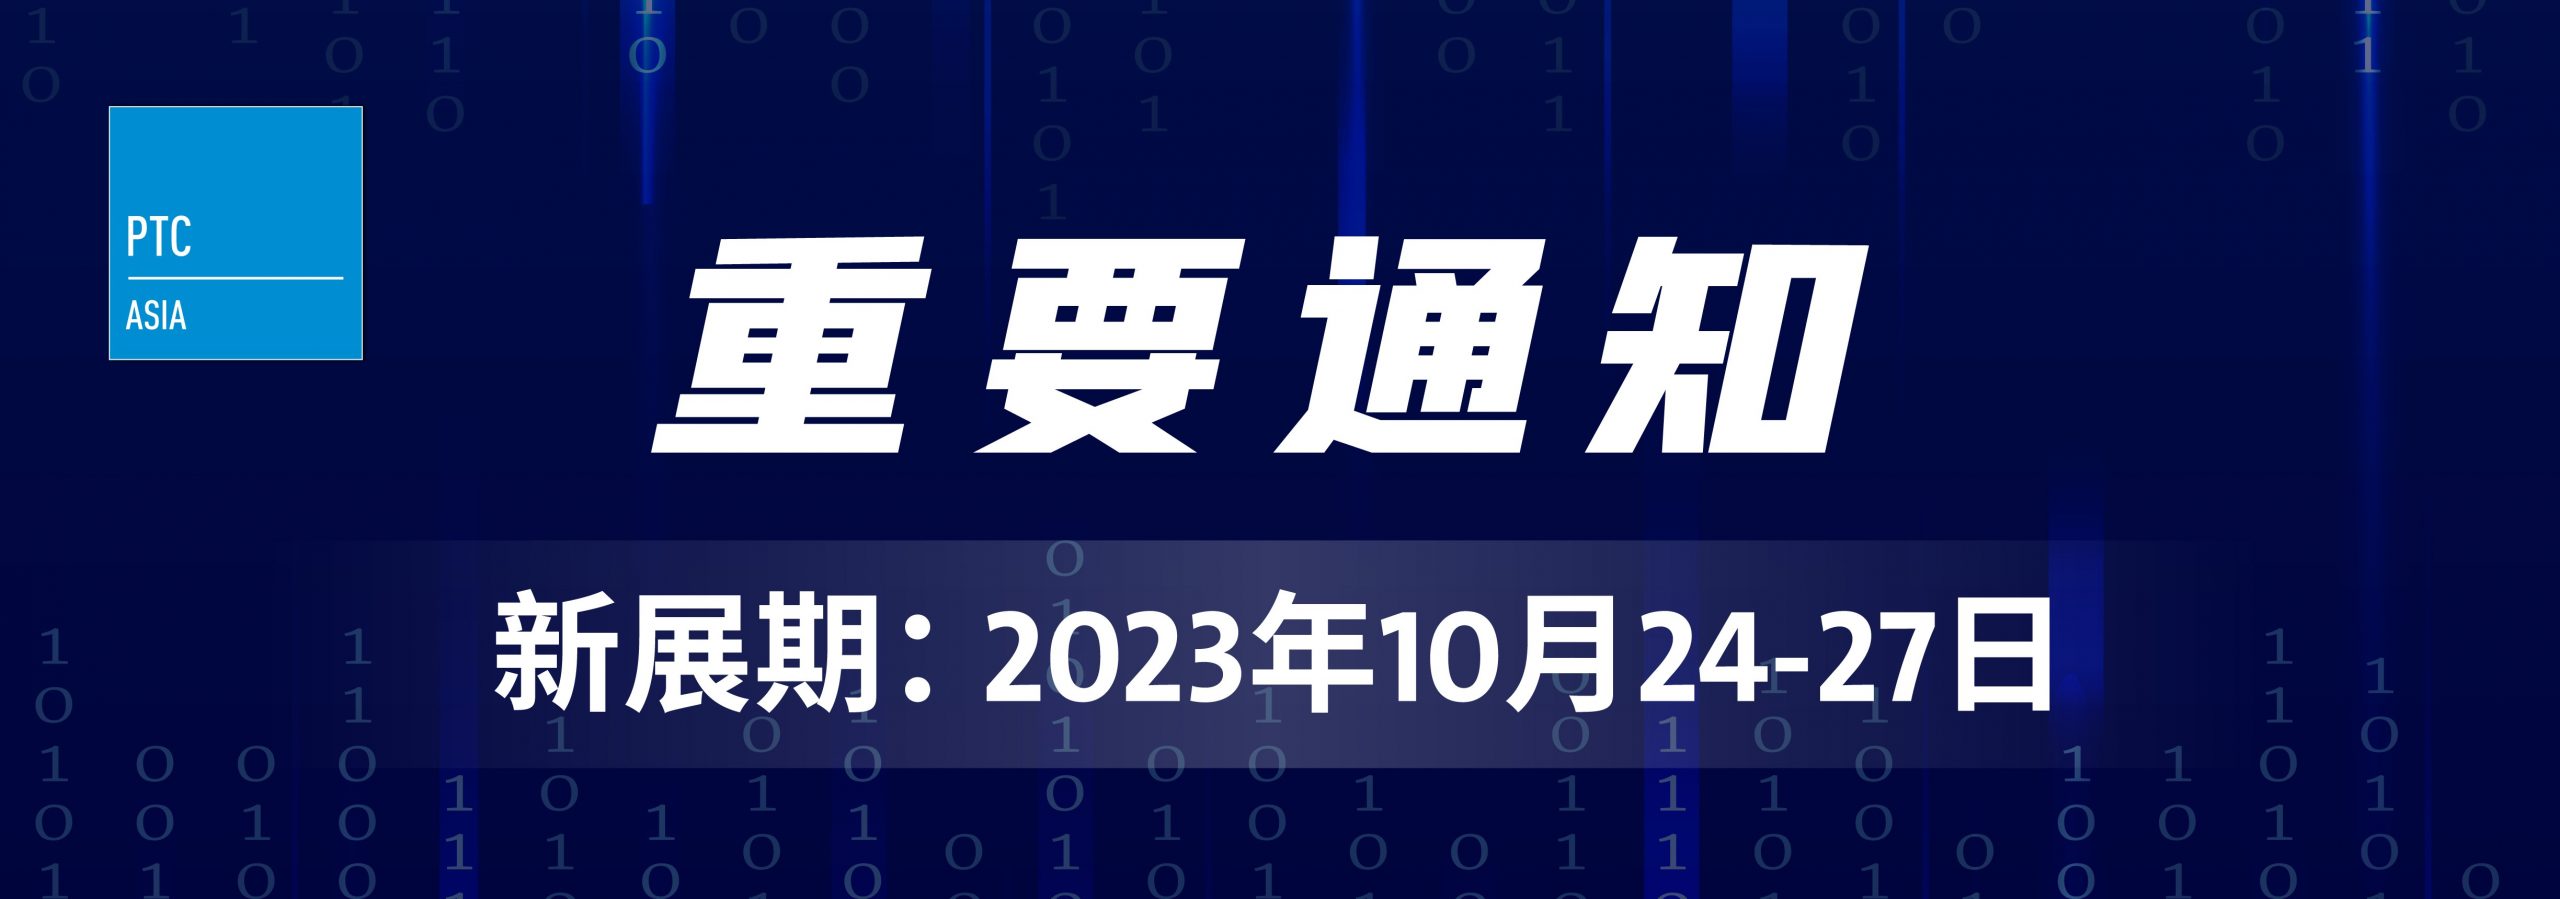 2023上海PTC|上海PTC展|